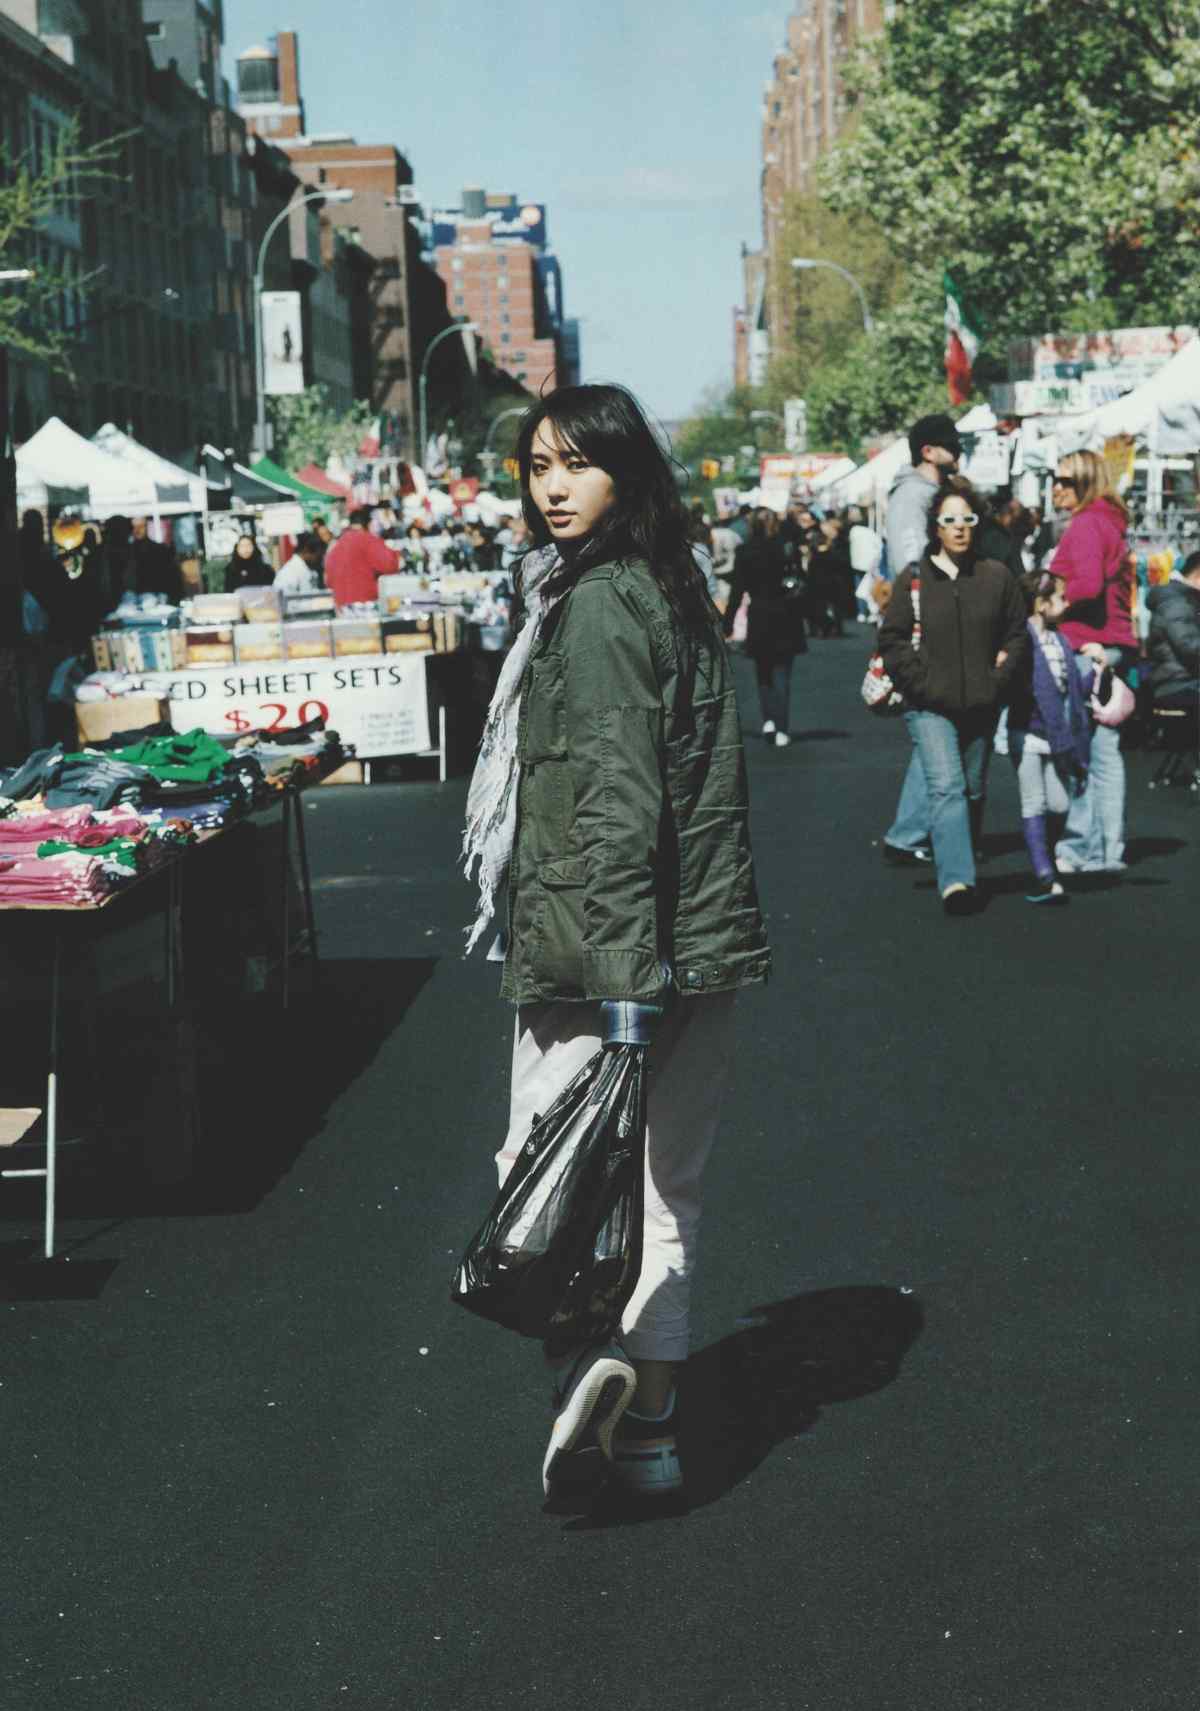 日本美女新垣结衣可爱街头写真图片手机壁纸